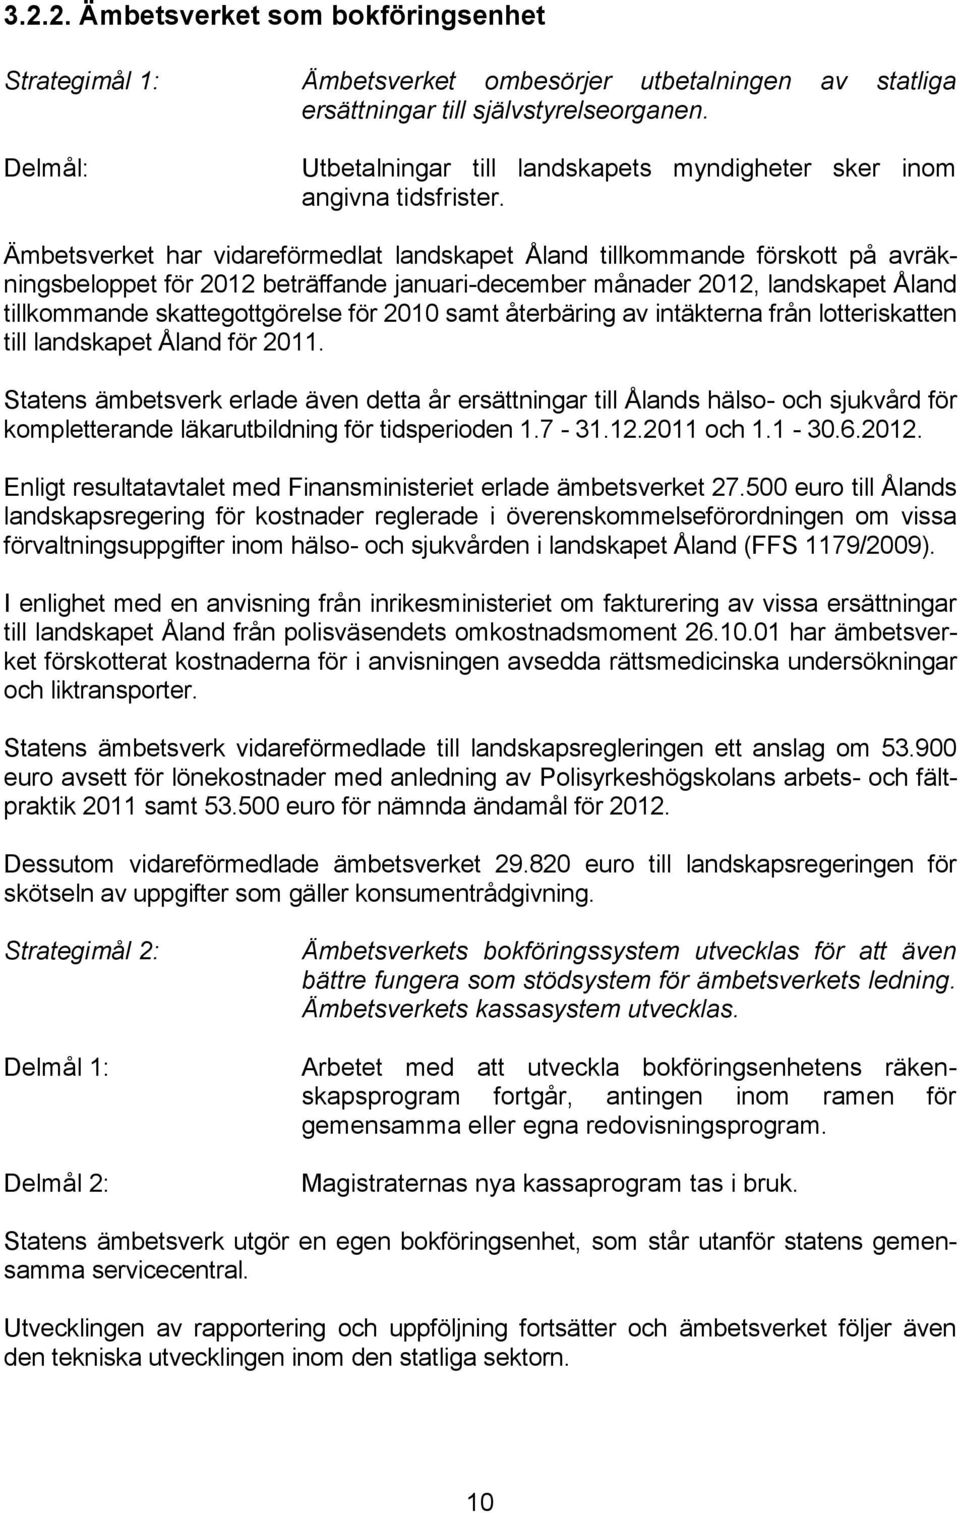 Ämbetsverket har vidareförmedlat landskapet Åland tillkommande förskott på avräkningsbeloppet för 2012 beträffande januari-december månader 2012, landskapet Åland tillkommande skattegottgörelse för